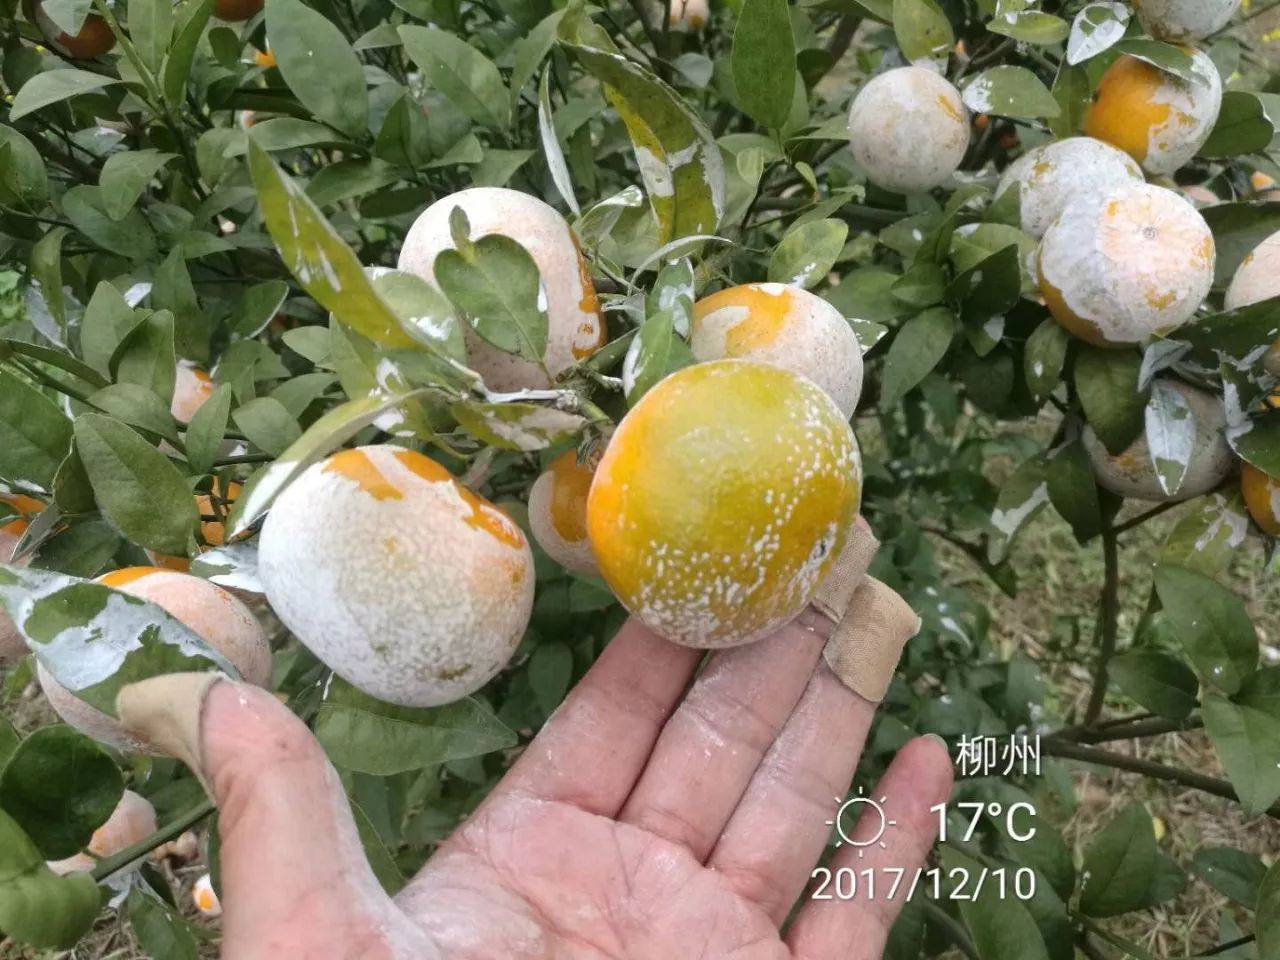 【果技精选】柑橘黄龙病对柑橘果实品质到底有啥影响呢?